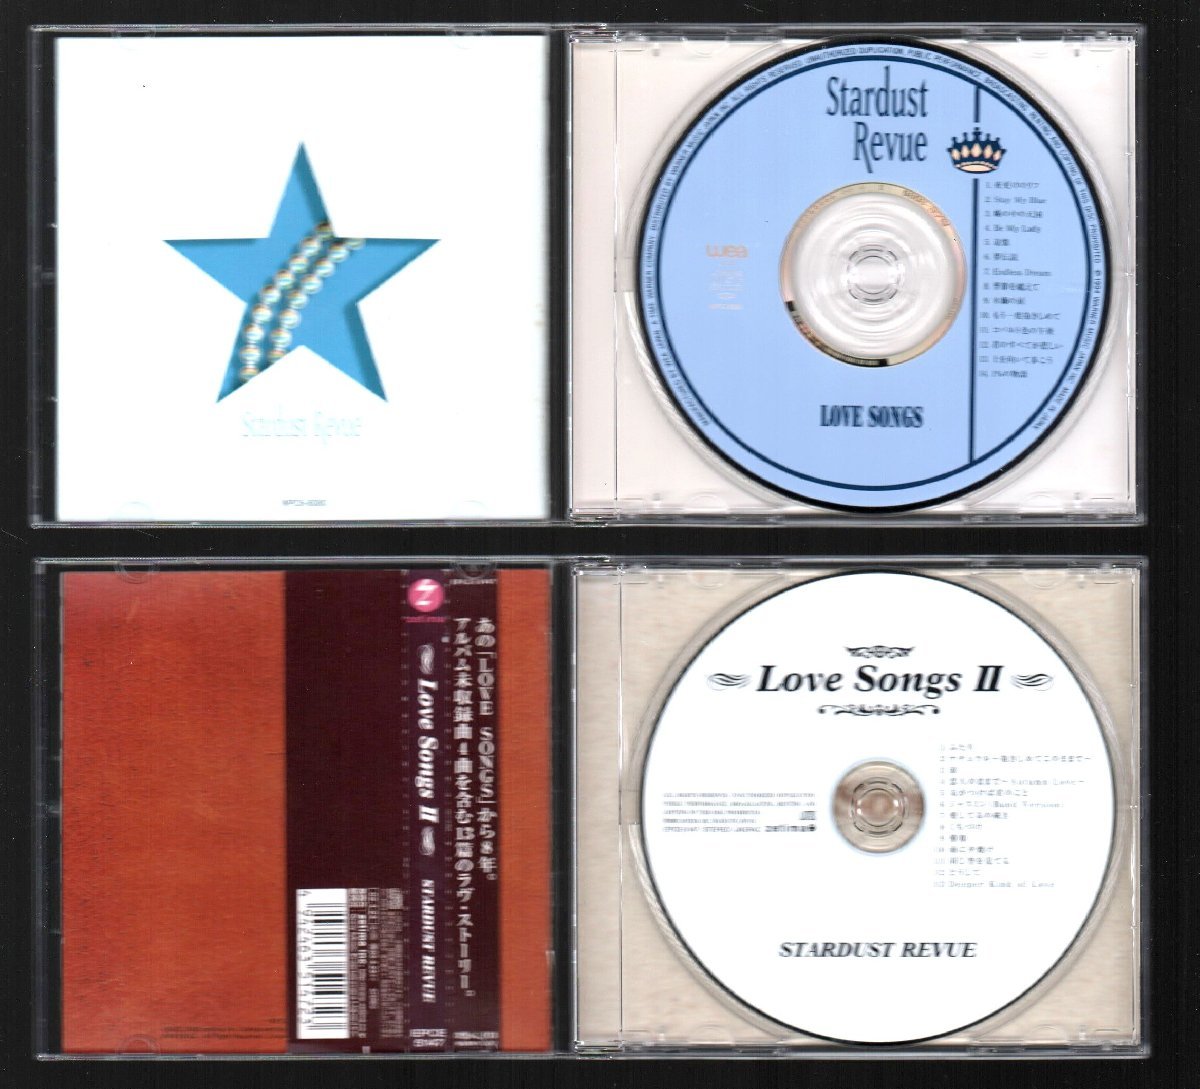 # Star пыль * Revue # Rav song лучший (2 произведение комплект )#[Love Songs][ II]#! дерево лотос. слезы!#WPC6-8080/EPCE-5147#94&02 год произведение #